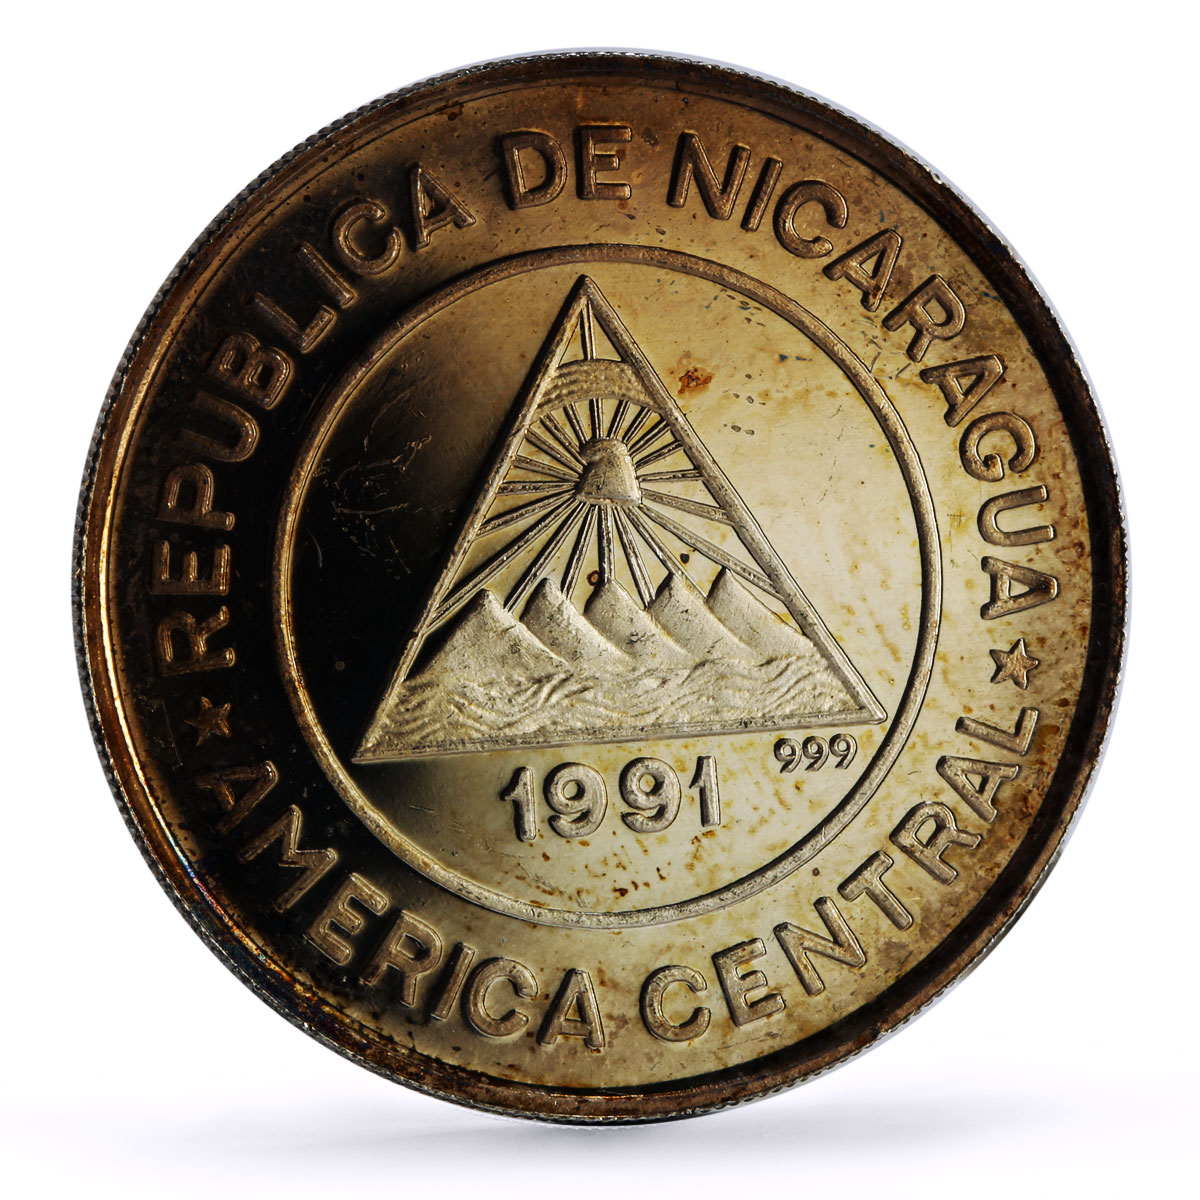 Nicaragua 10 cordobas Spanish Royal Visit Barcelona Olympics silver coin 1991